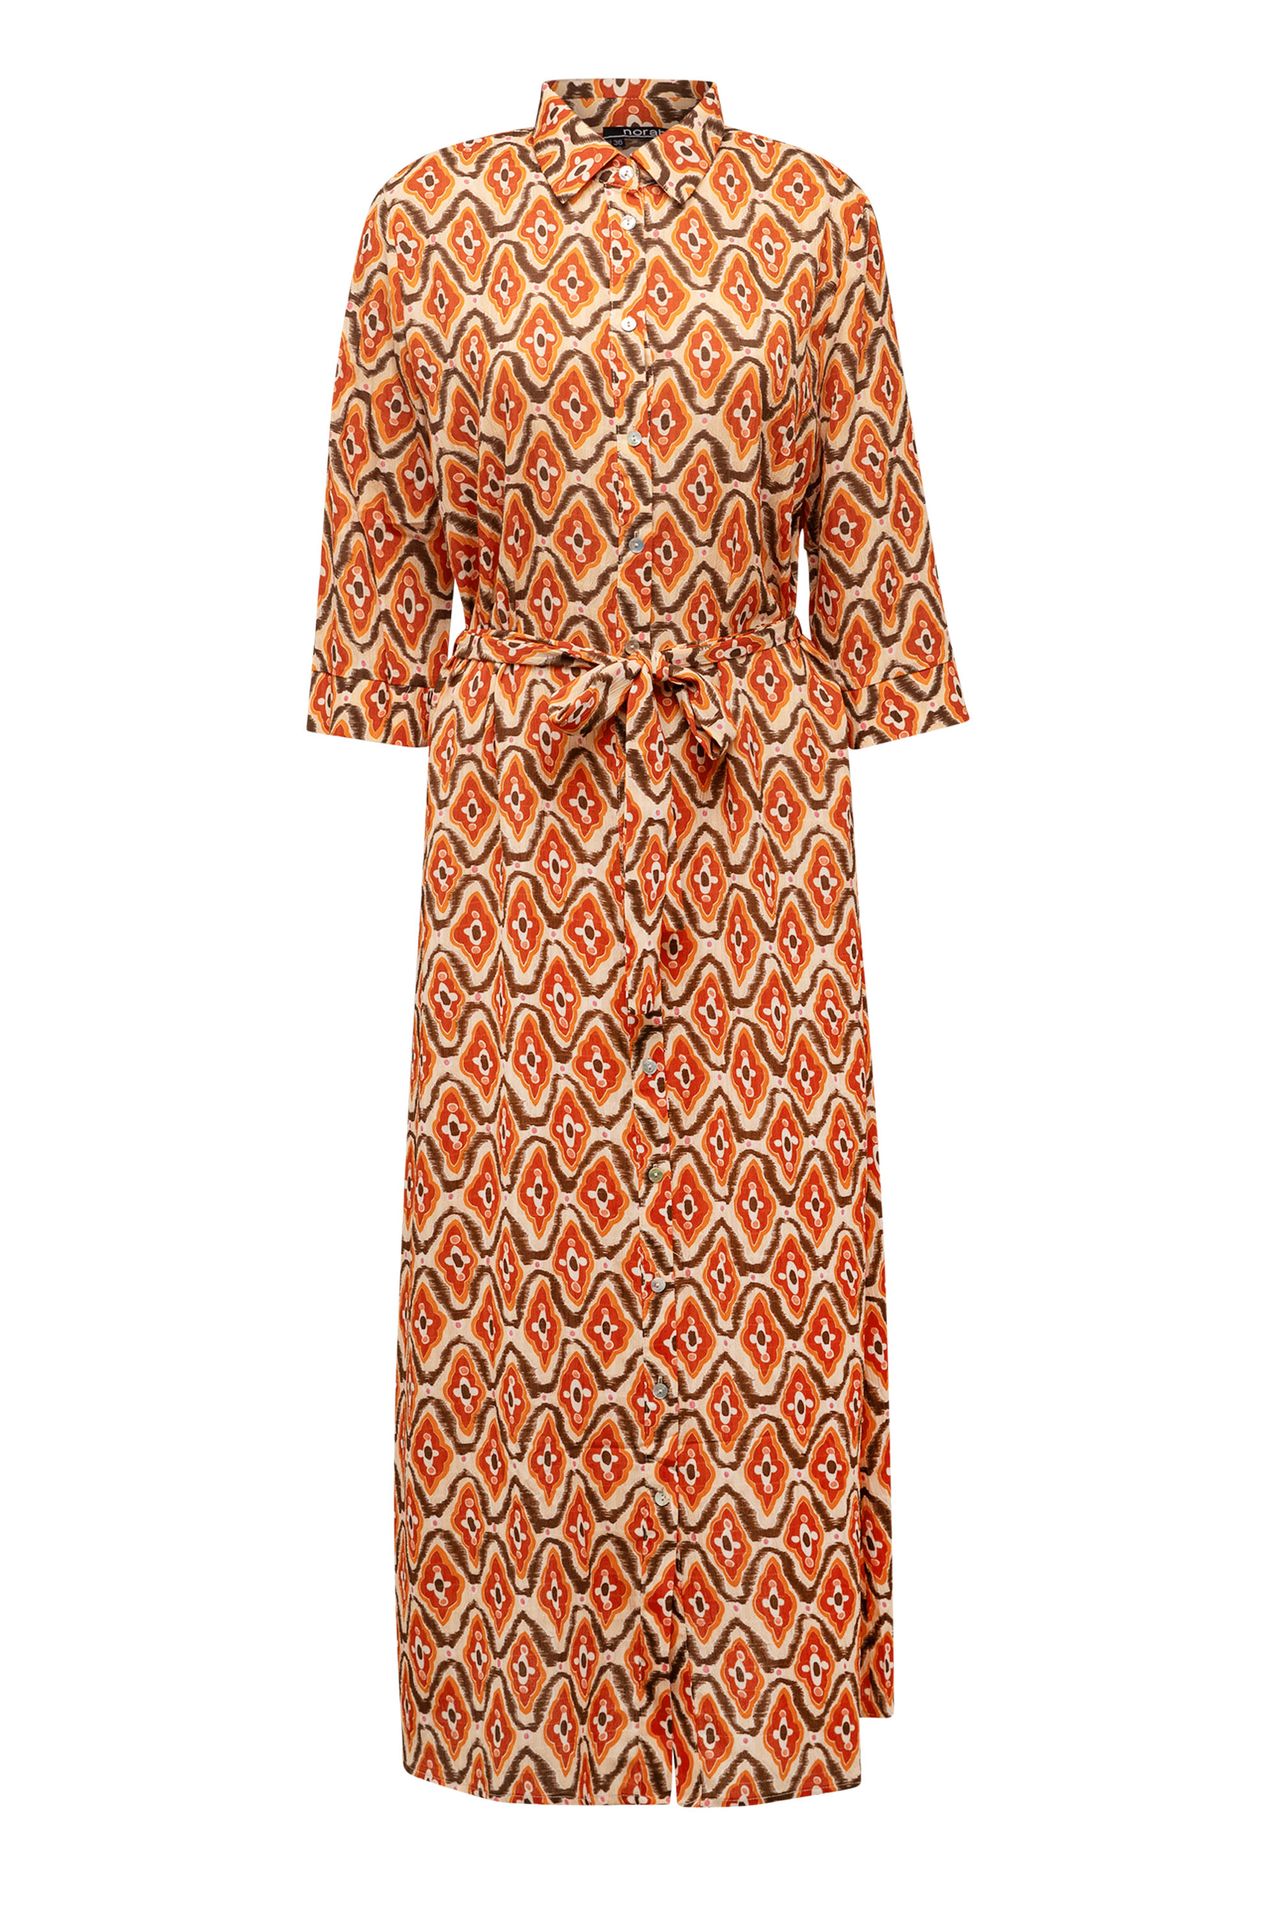  Enkellange jurk met print brown multicolor 212977-220-36